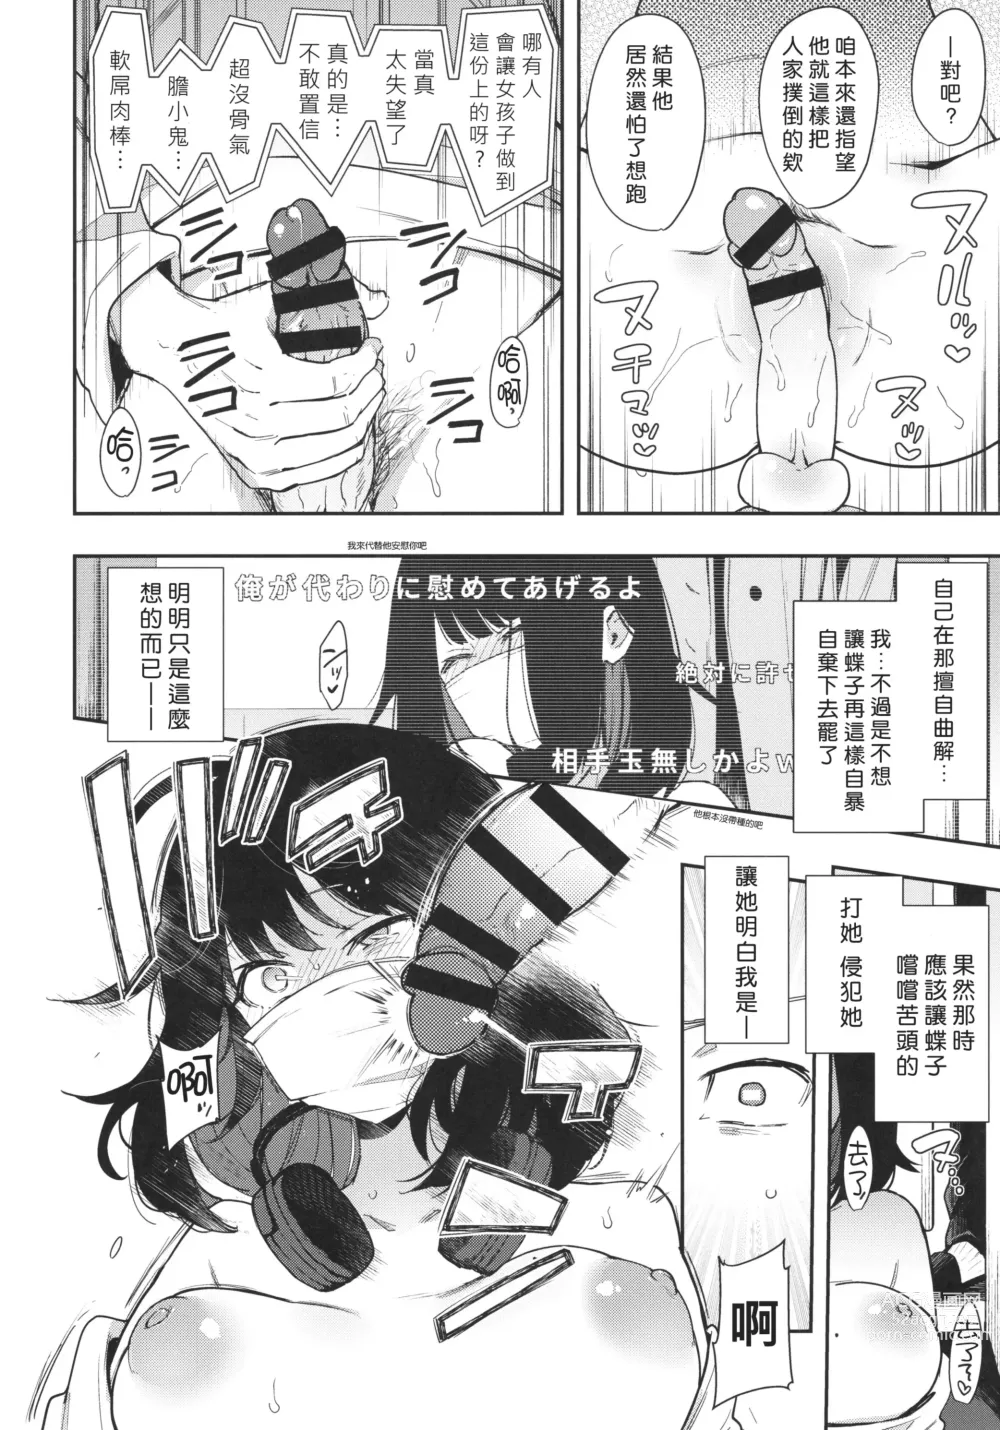 Page 17 of doujinshi Chouko I-V